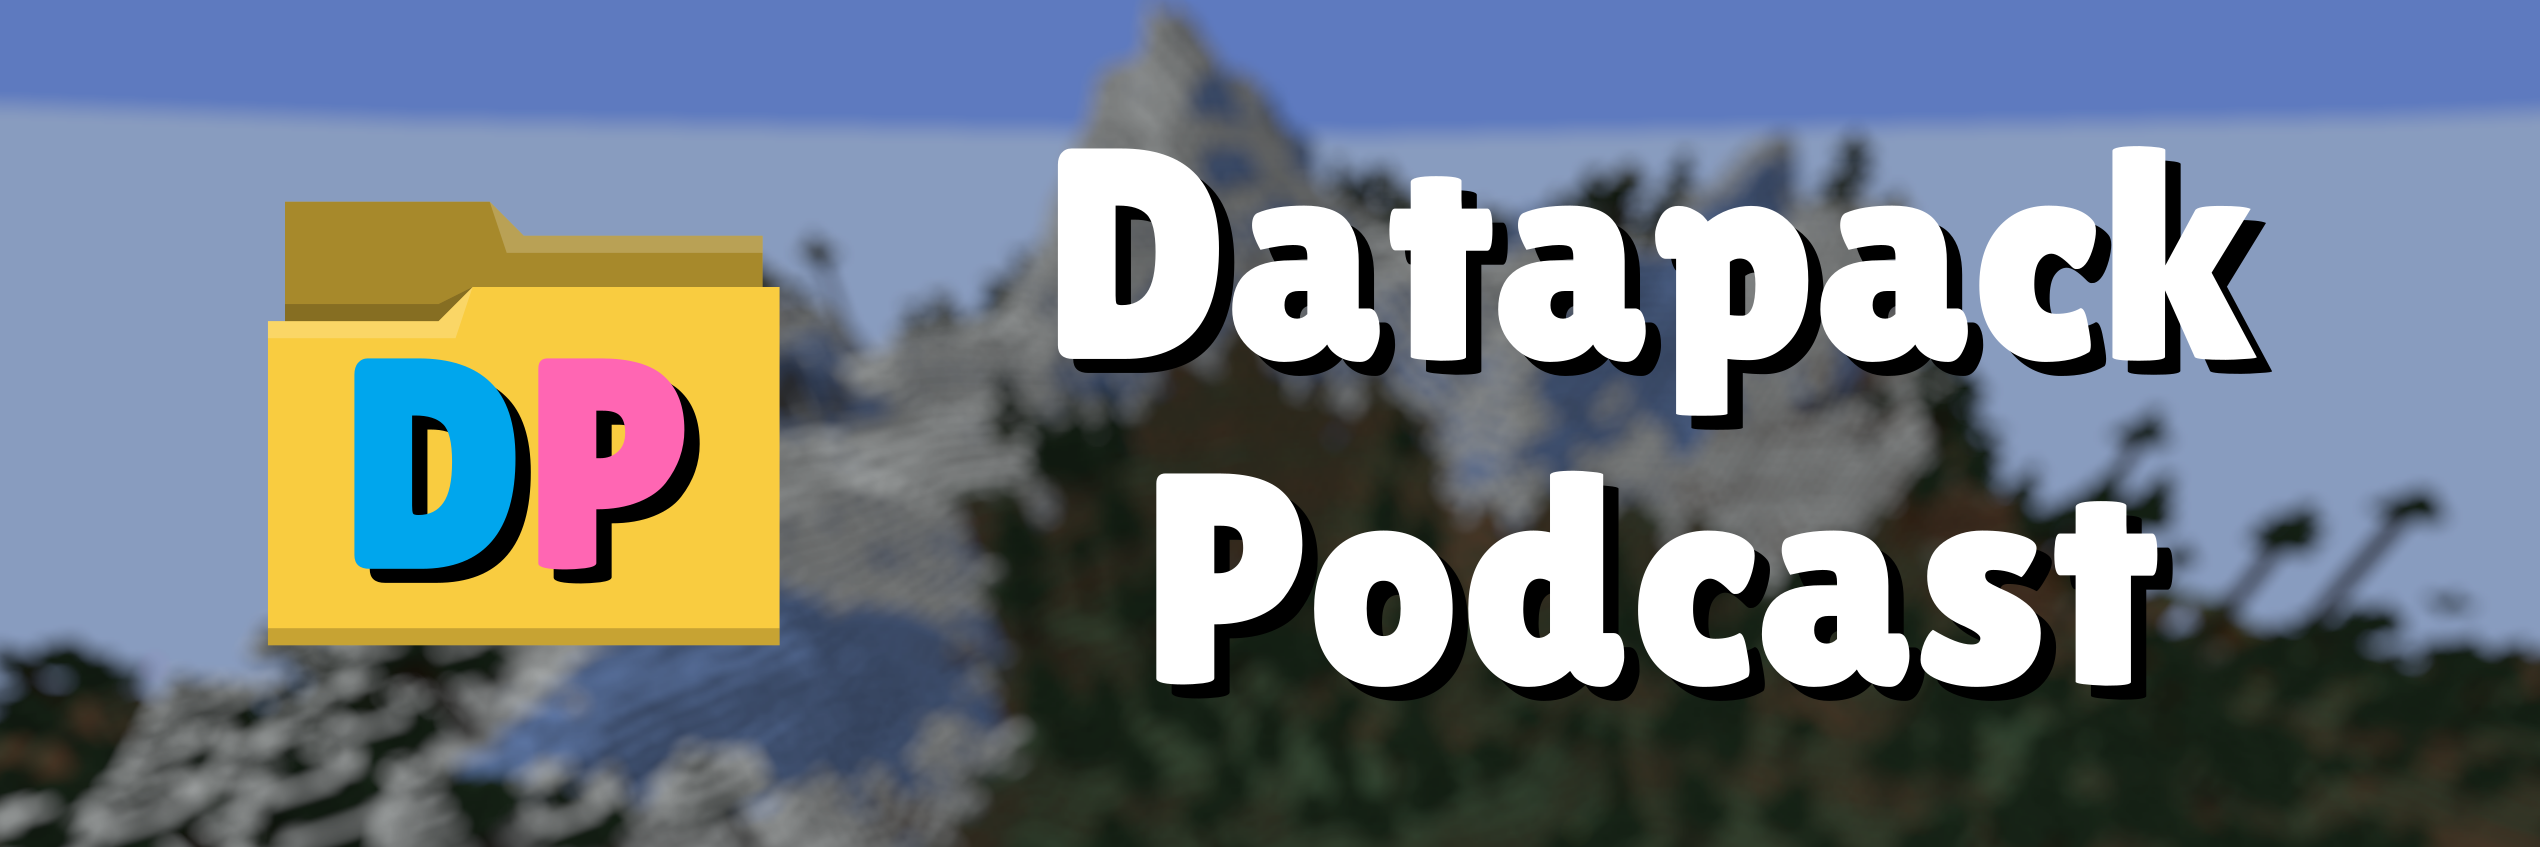 Datapack Podcast banner